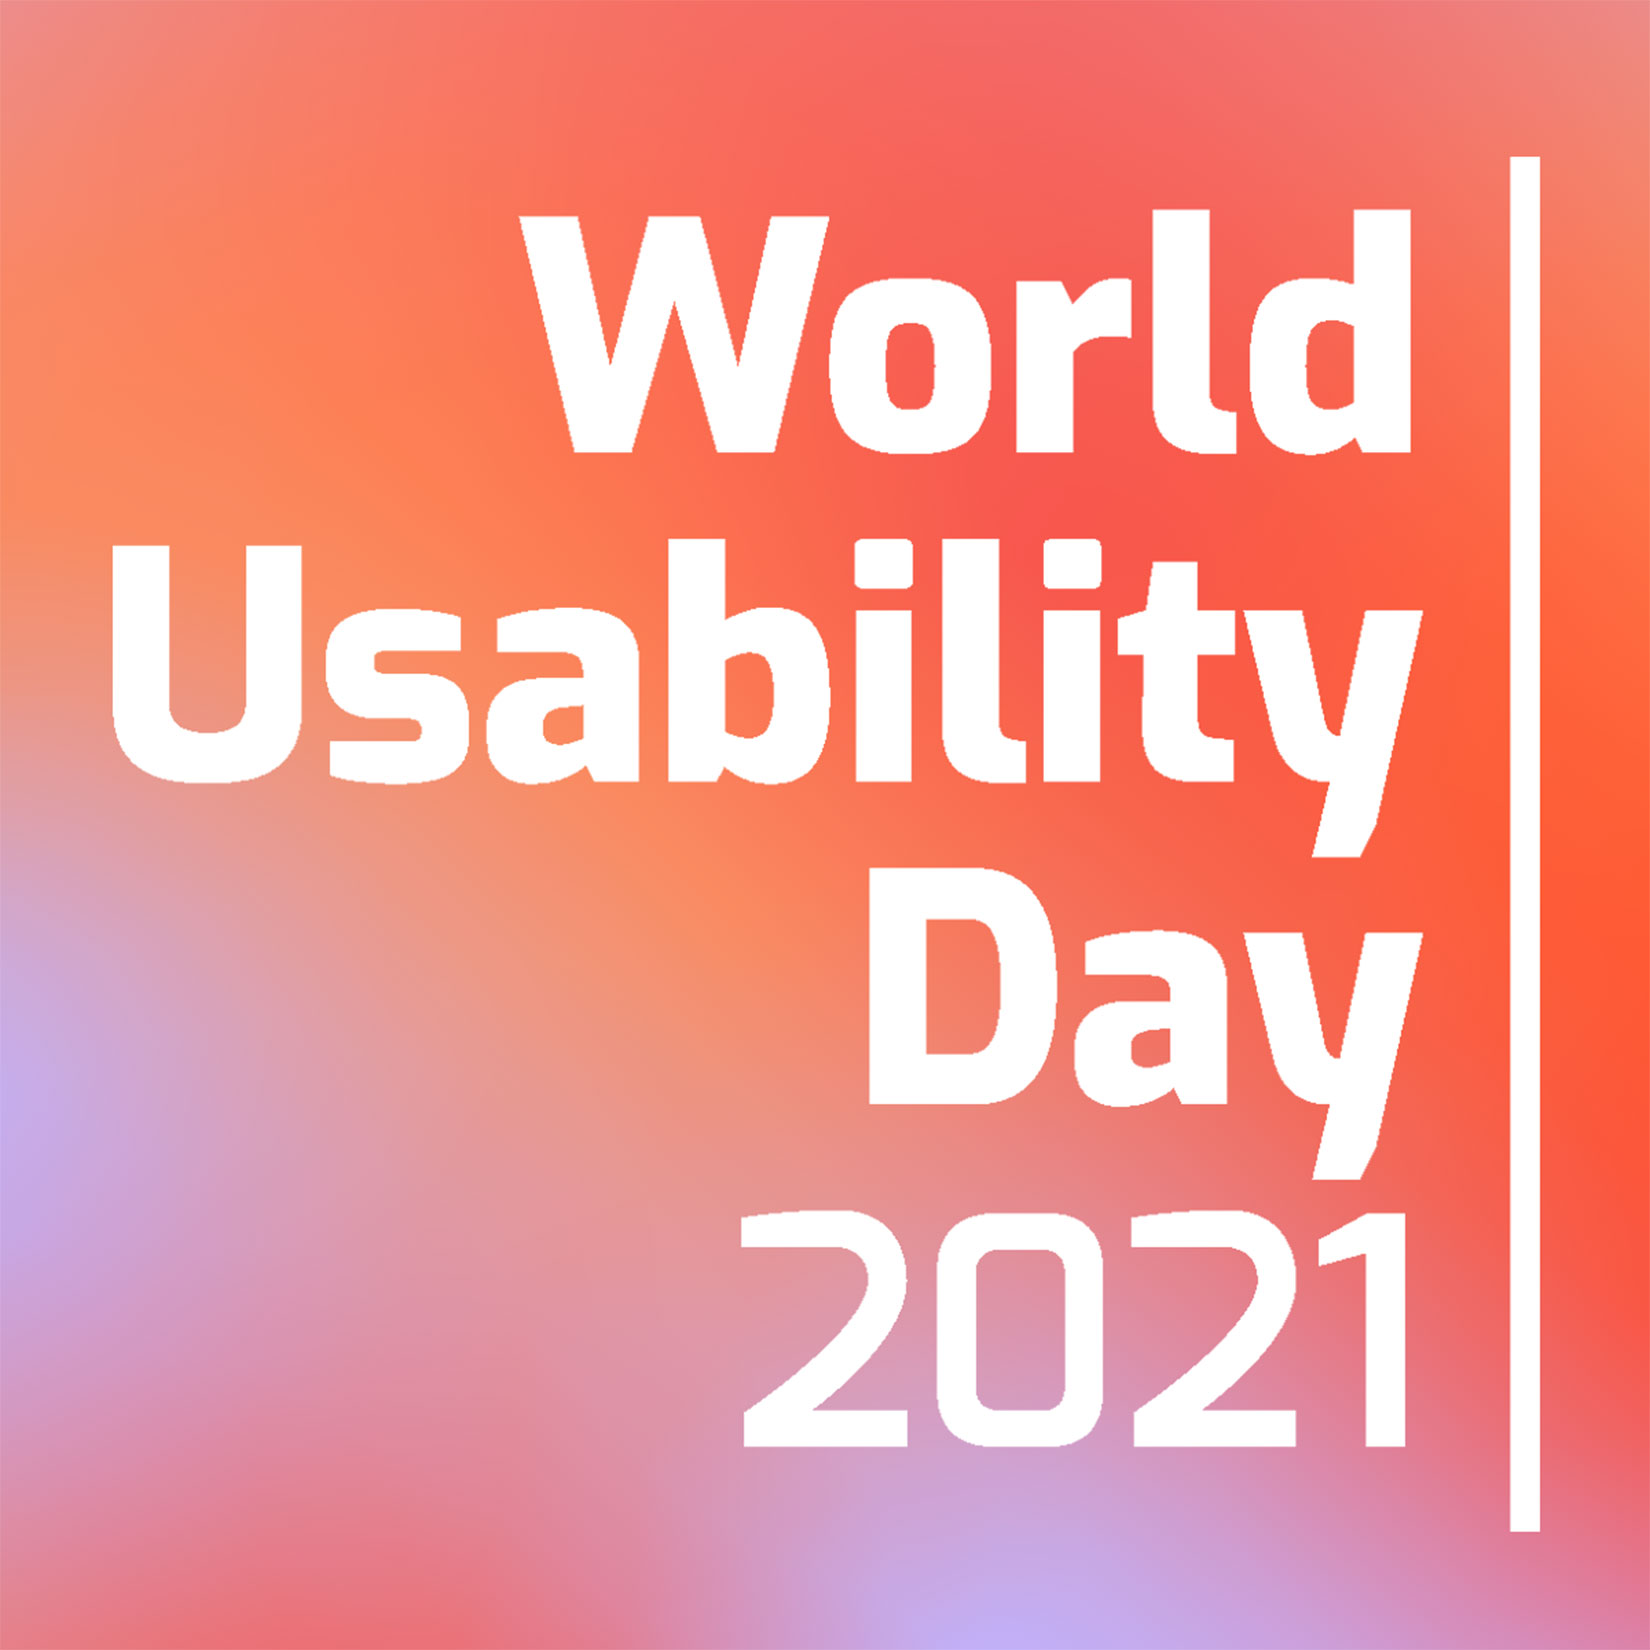 World Usability Day 2021 Favicon Design